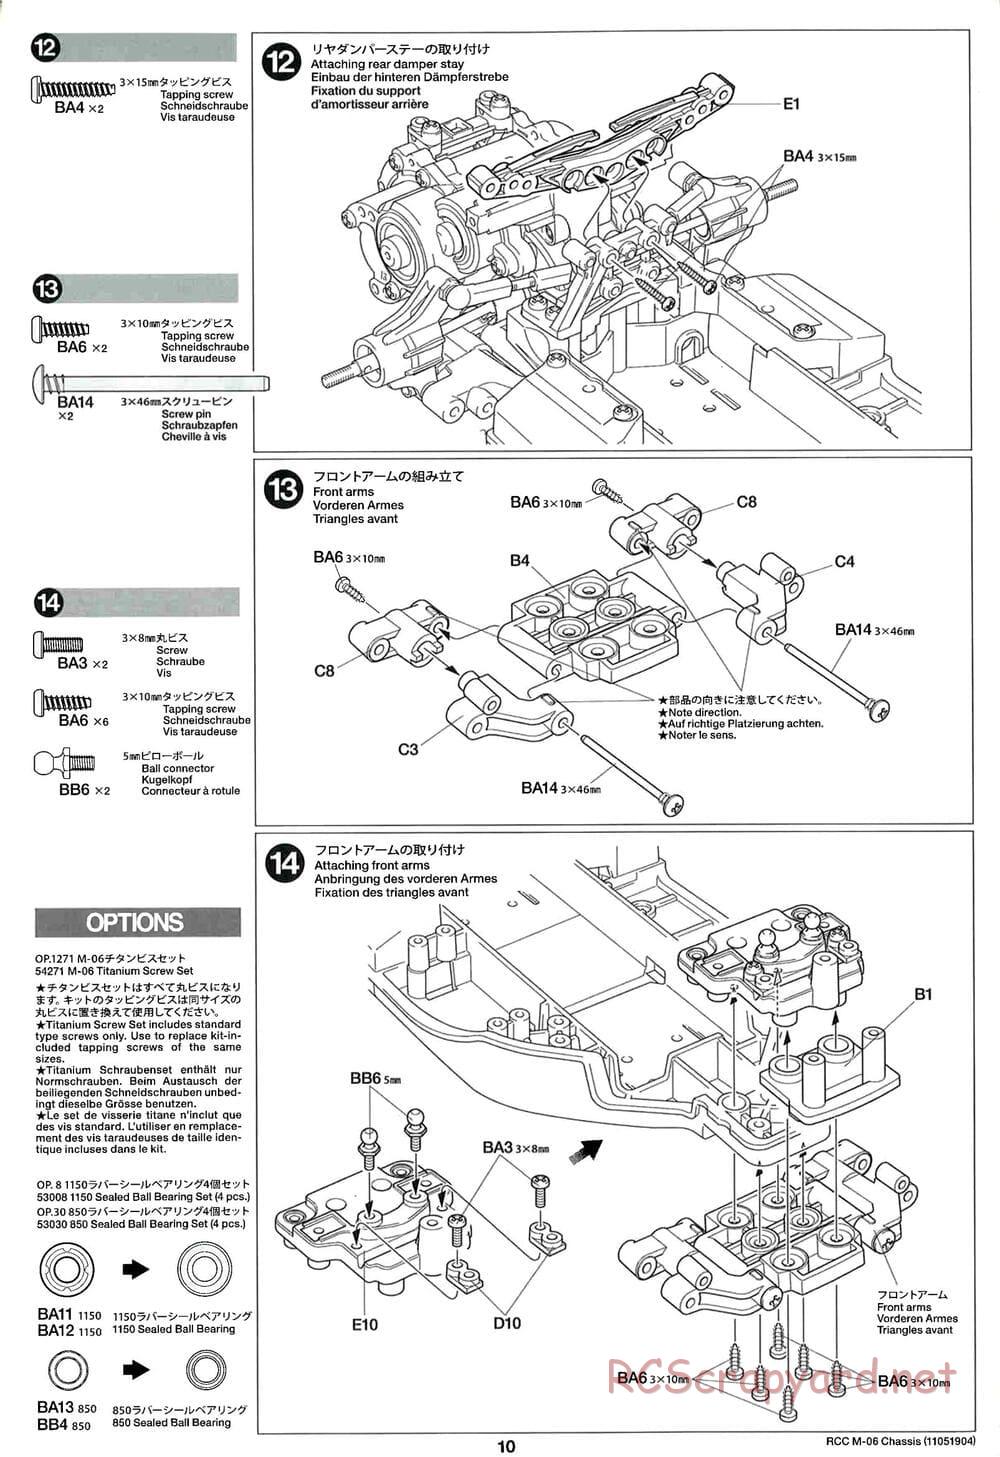 Tamiya - M-06 Chassis - Manual - Page 10